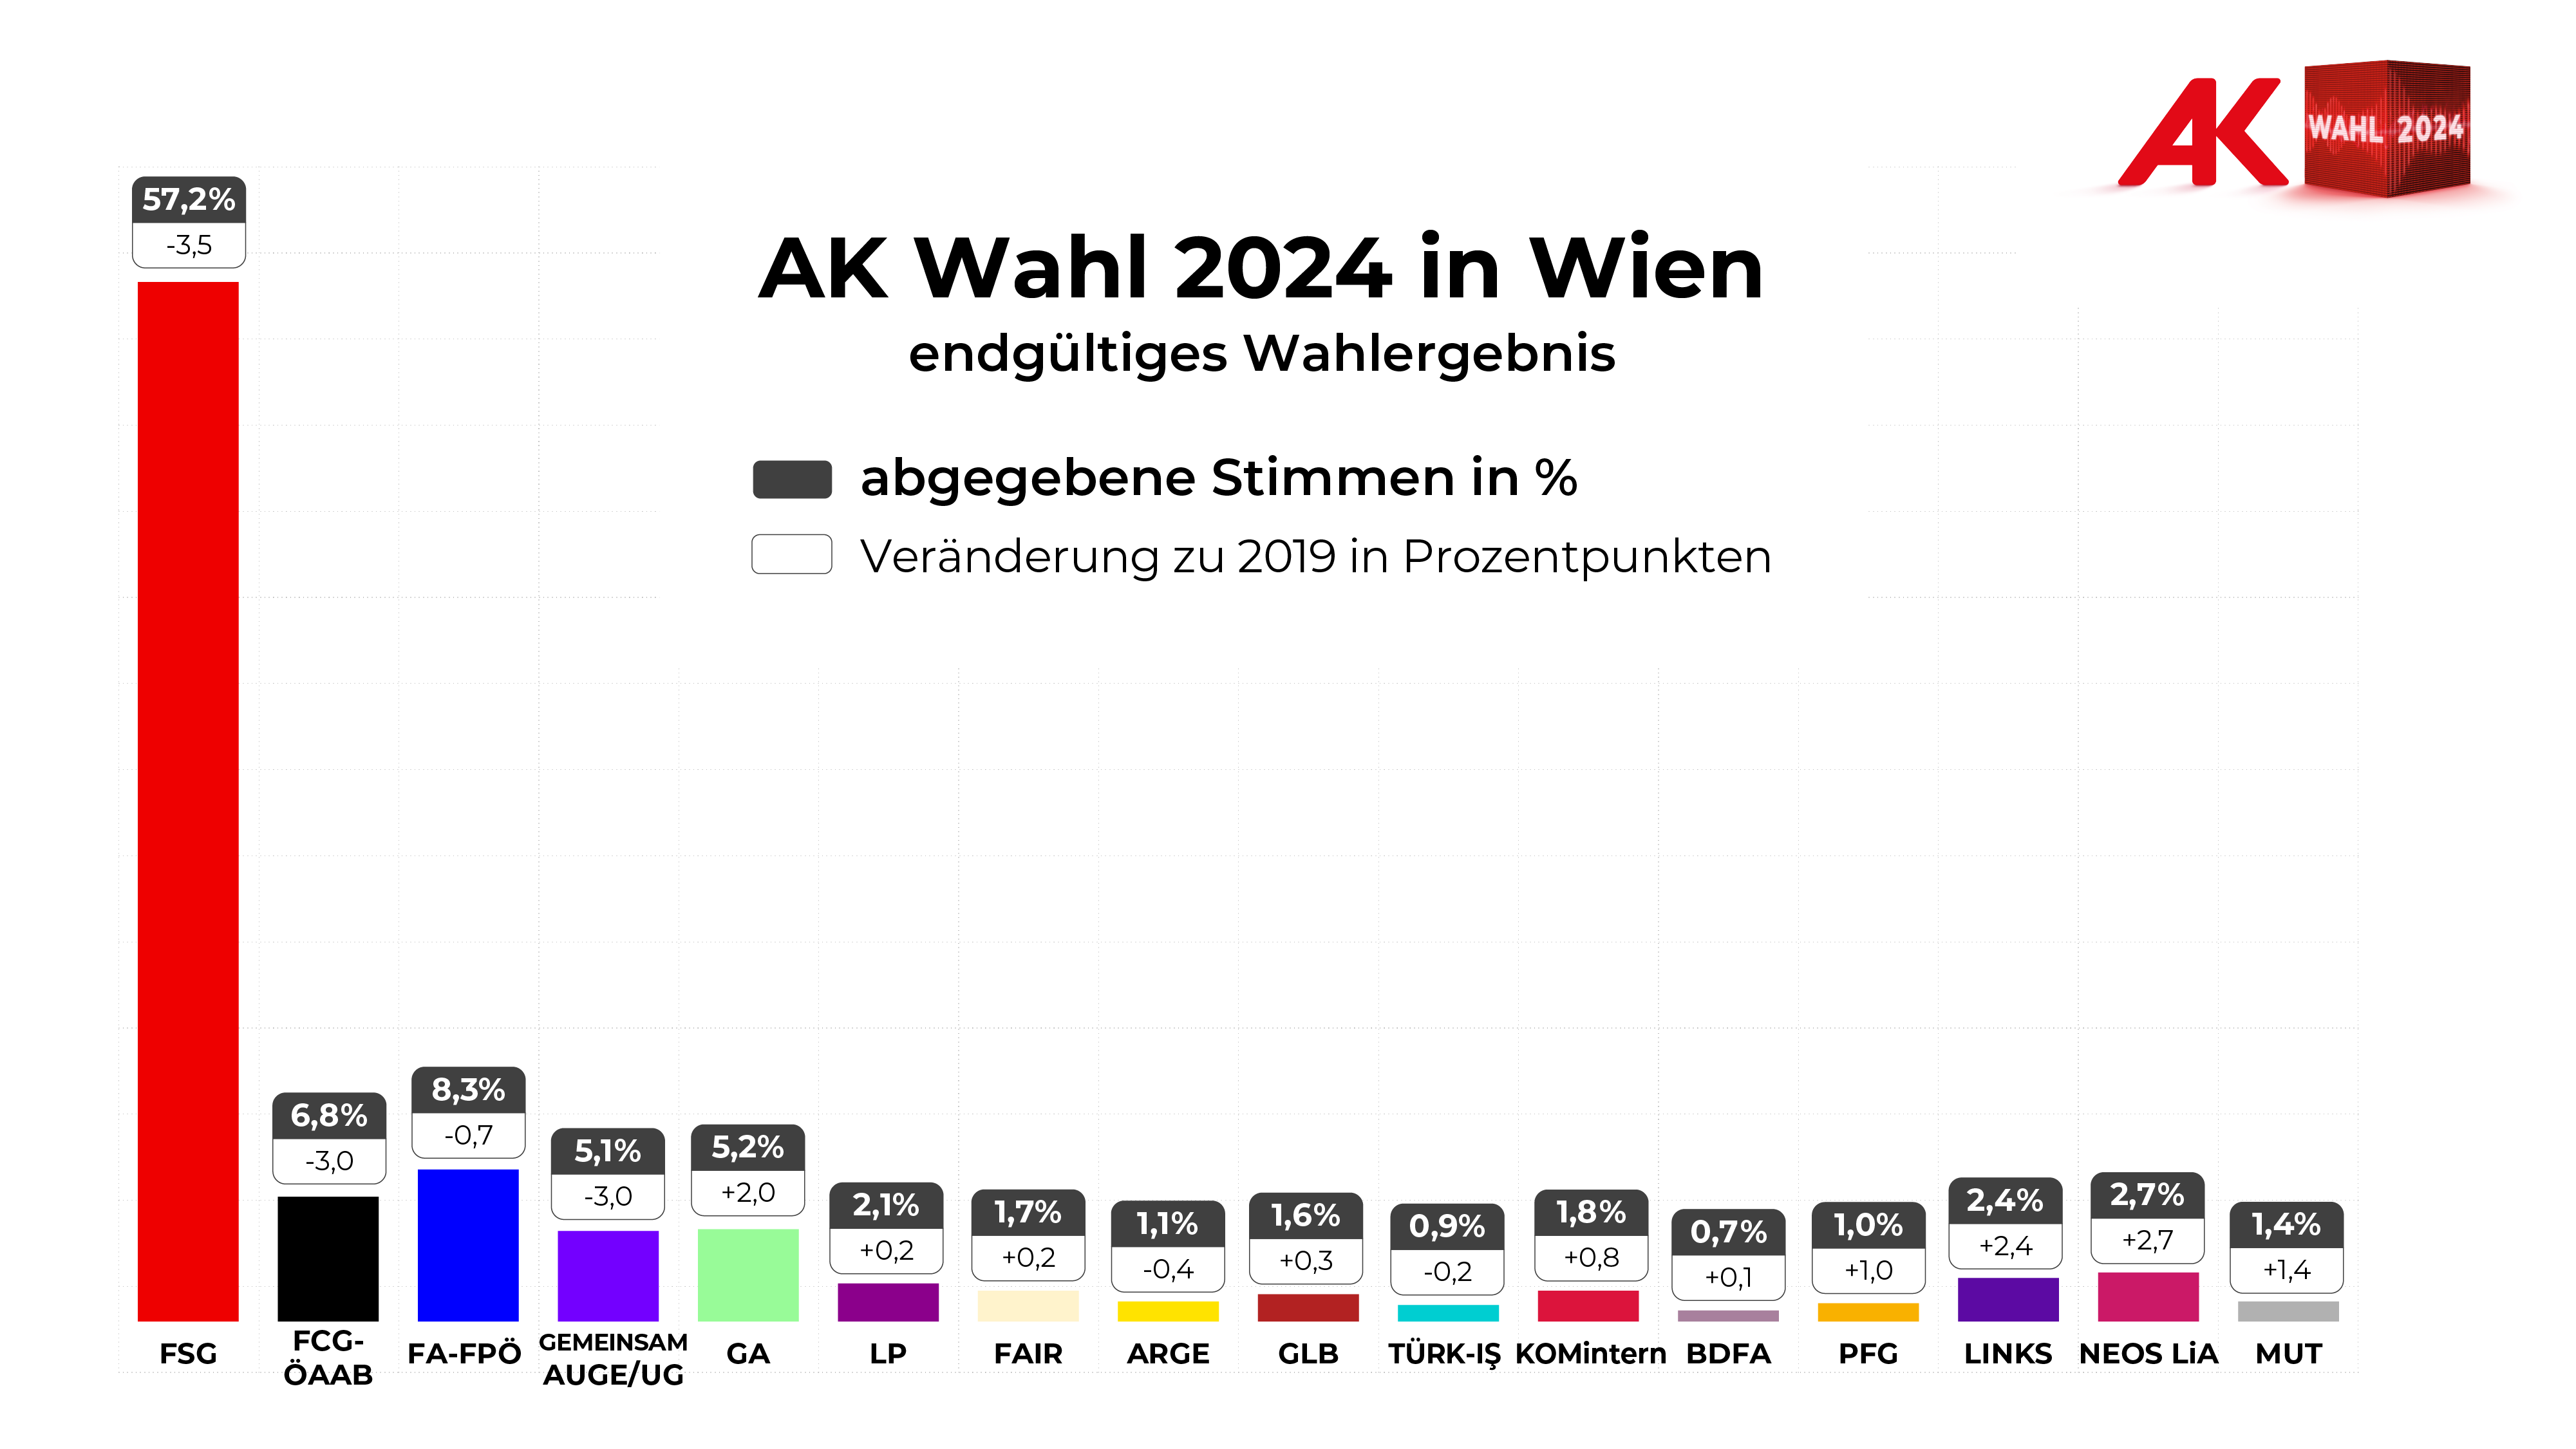 AK-Wahl Wien 2024: Endgültiges Wahlergebnis - Stimmen